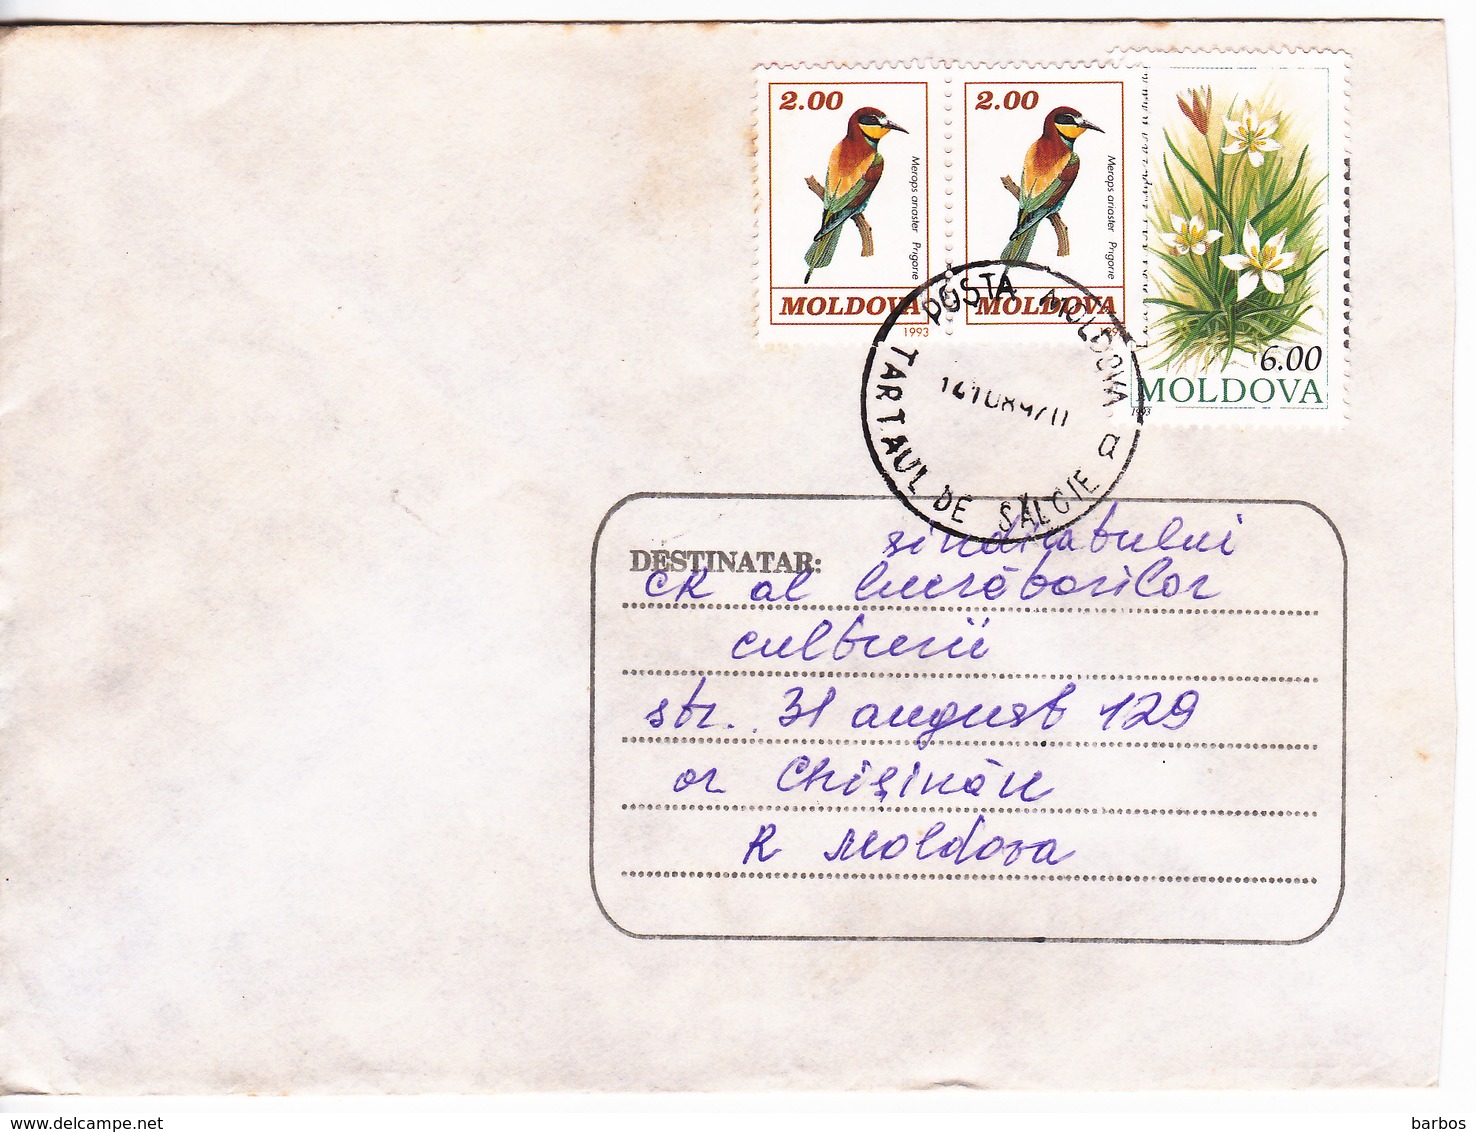 1997 , MOLDOVA , MOLDAVIE ,  MOLDAWIEN ,  MOLDAU , Birds , Flowers , Used Cover - Moldova